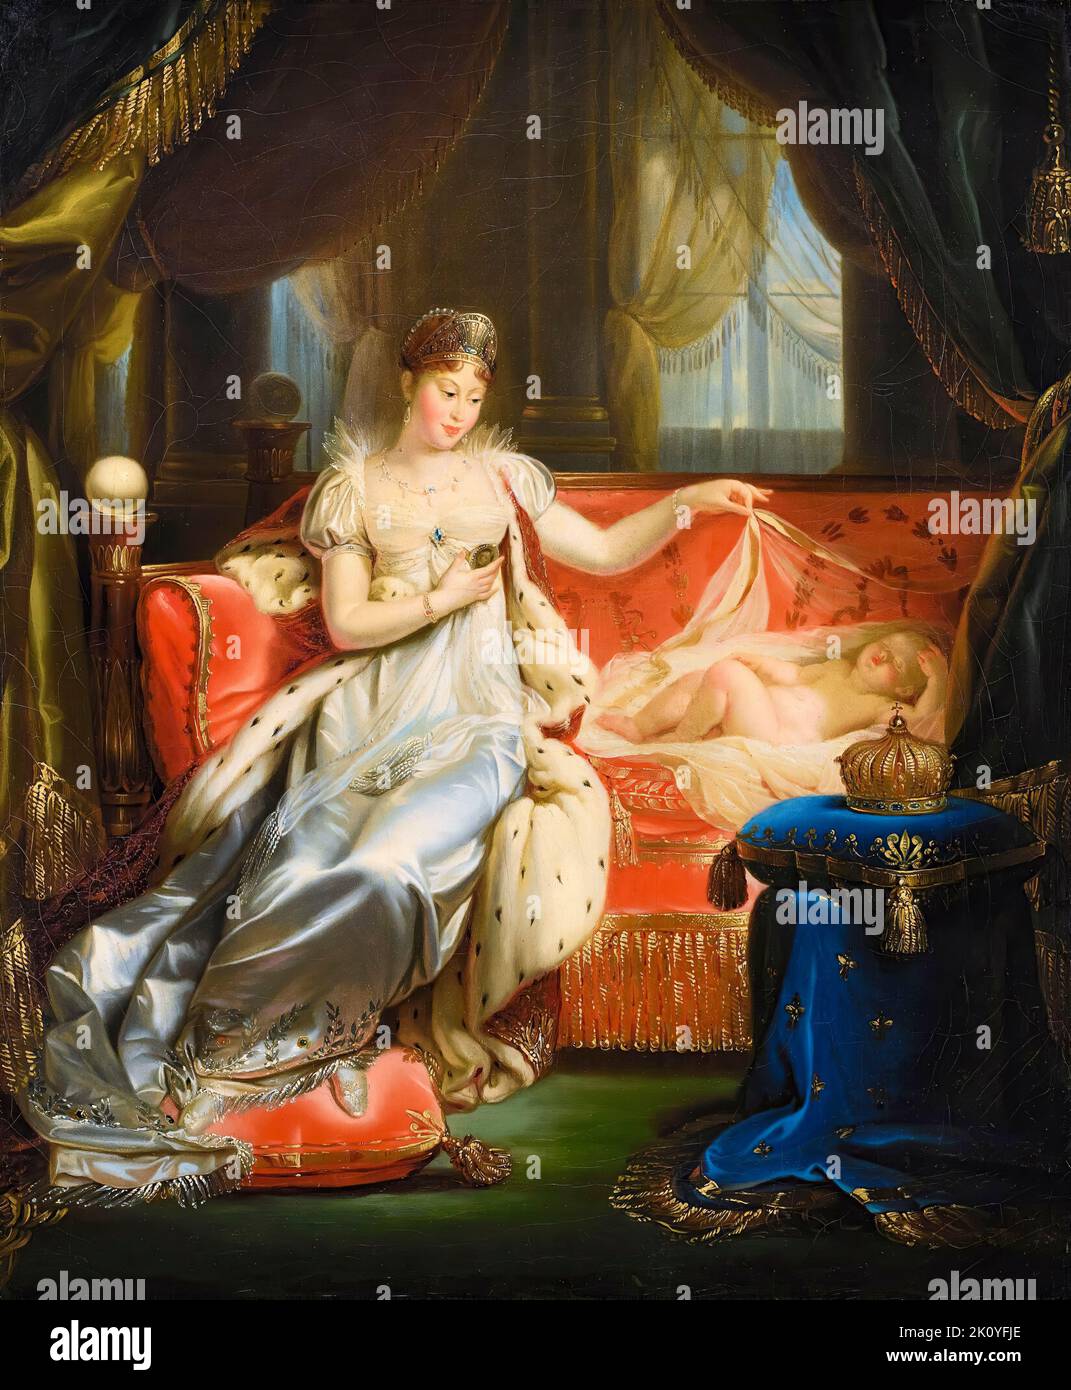 L'impératrice Marie-Louise d'Autriche (1791-1847) regardant le roi endormi de Rome (Napoléon II (1811-1832)), portrait peint à l'huile sur toile par Workshop de Joseph Franque, vers 1811 Banque D'Images